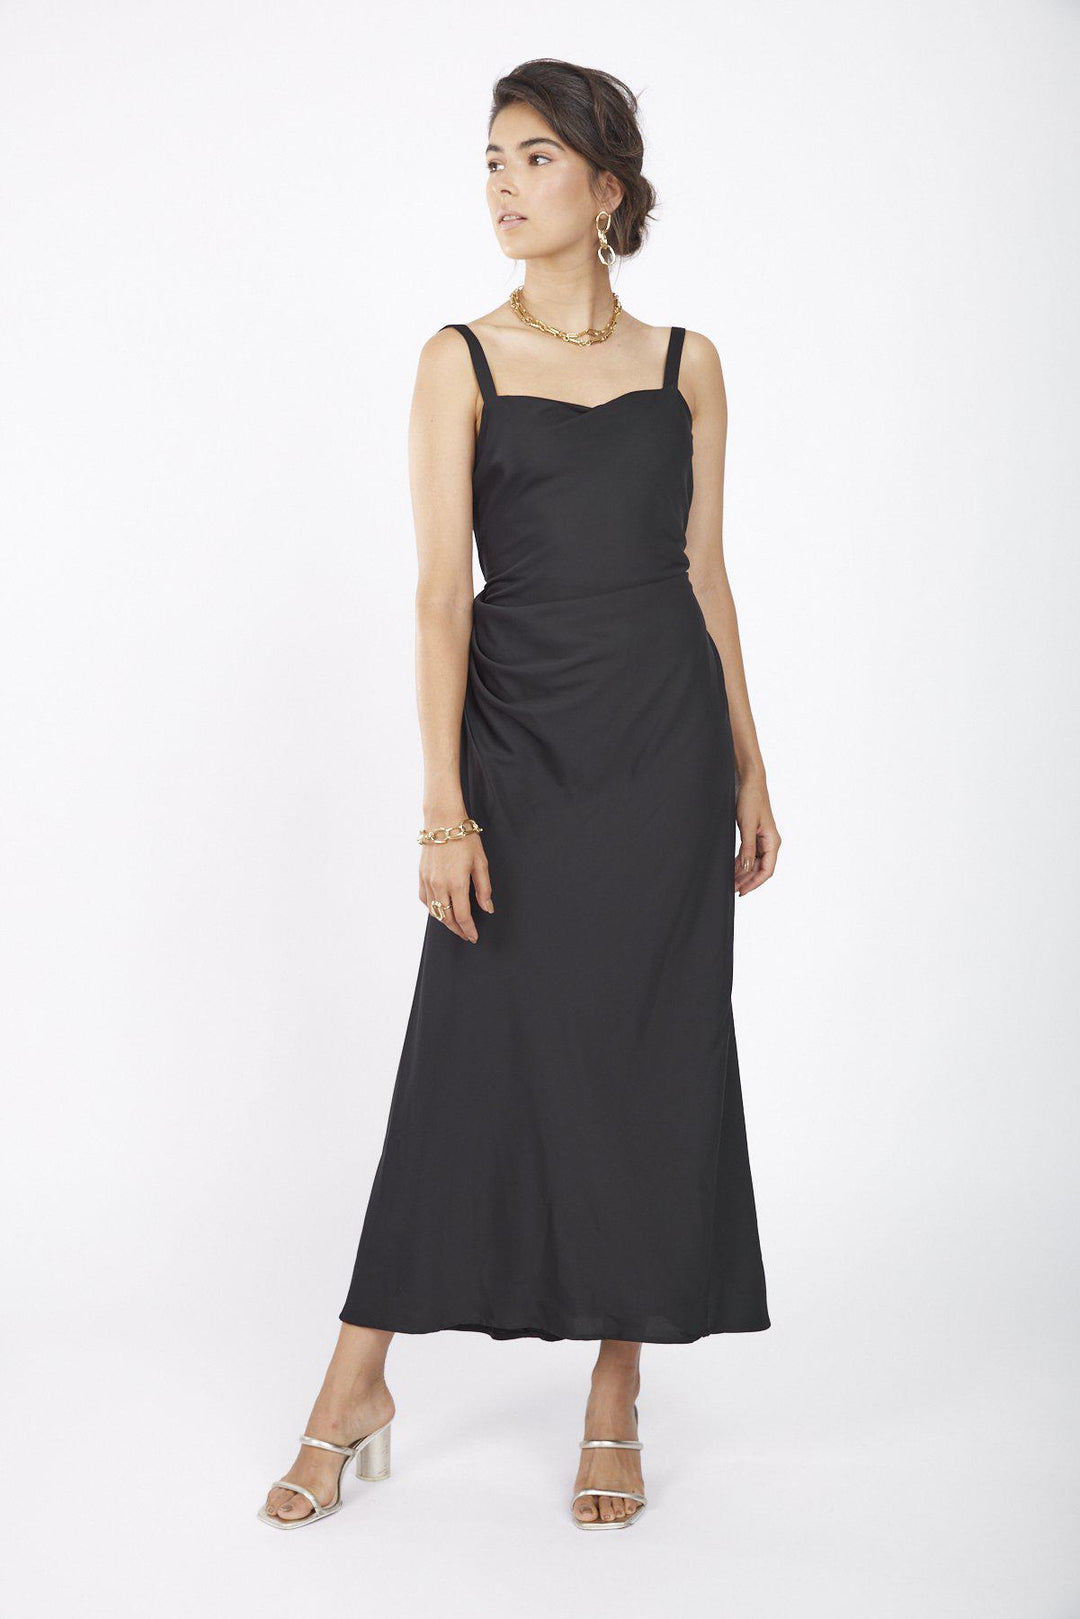 שמלת משי בצבע שחור - M By Maskit